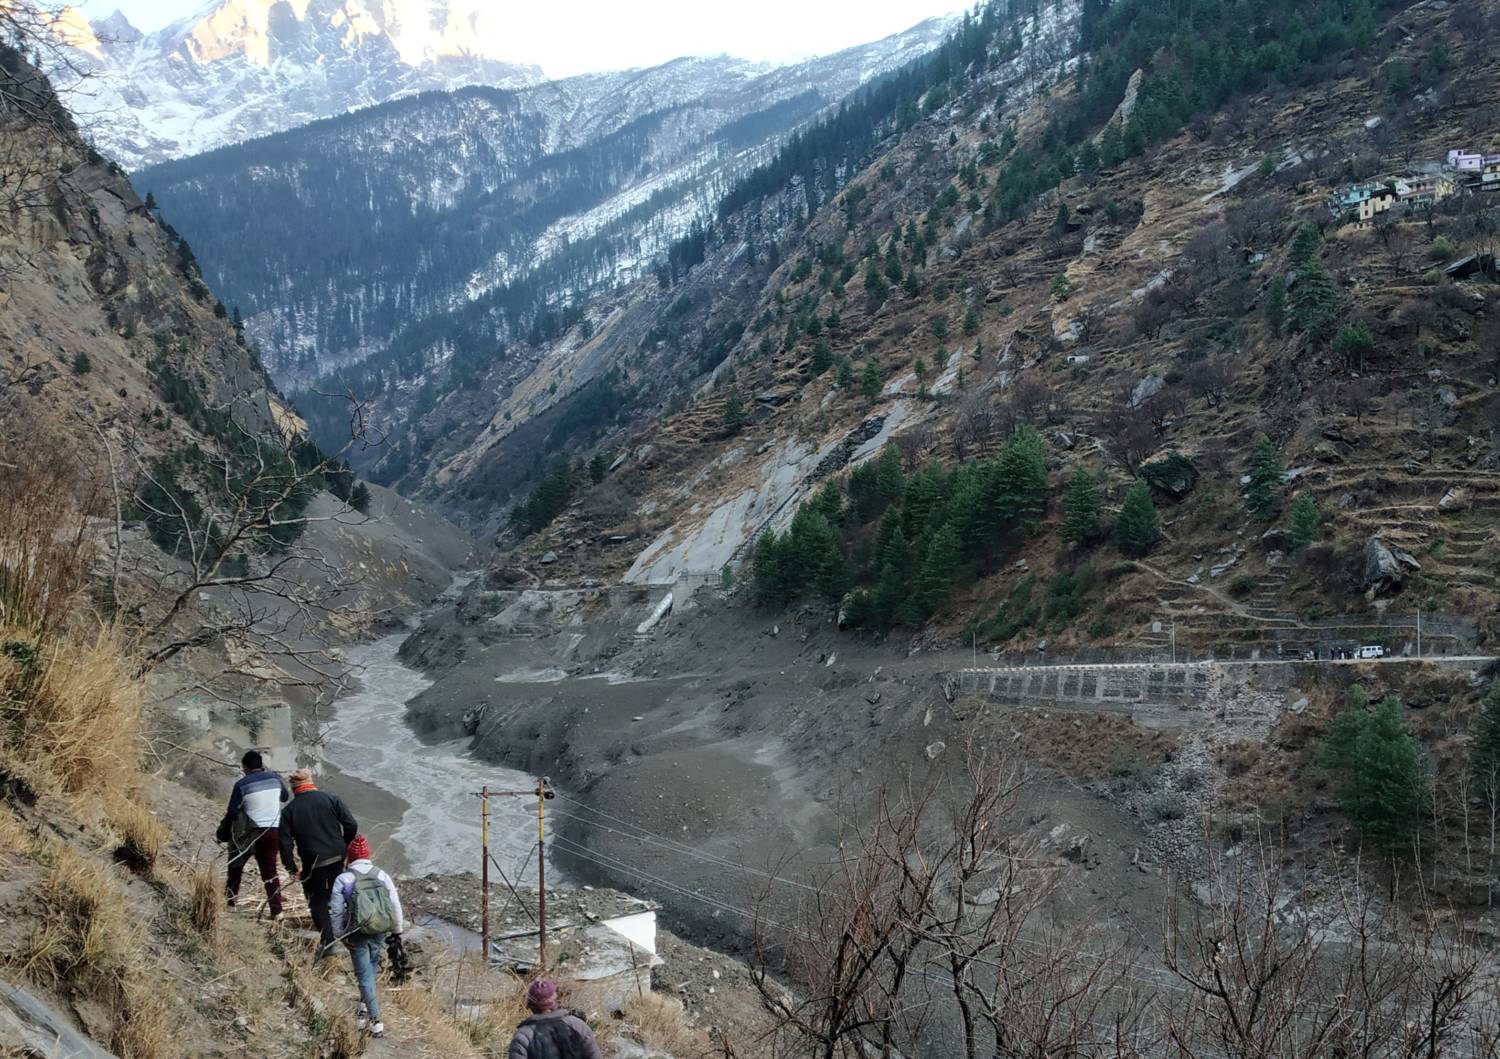 ΕΝΗΜΕΡΩΣΗ-ο παγετώνας των Ιμαλαΐων σπάει στην Ινδία, περίπου 125 λείπουν από πλημμύρες